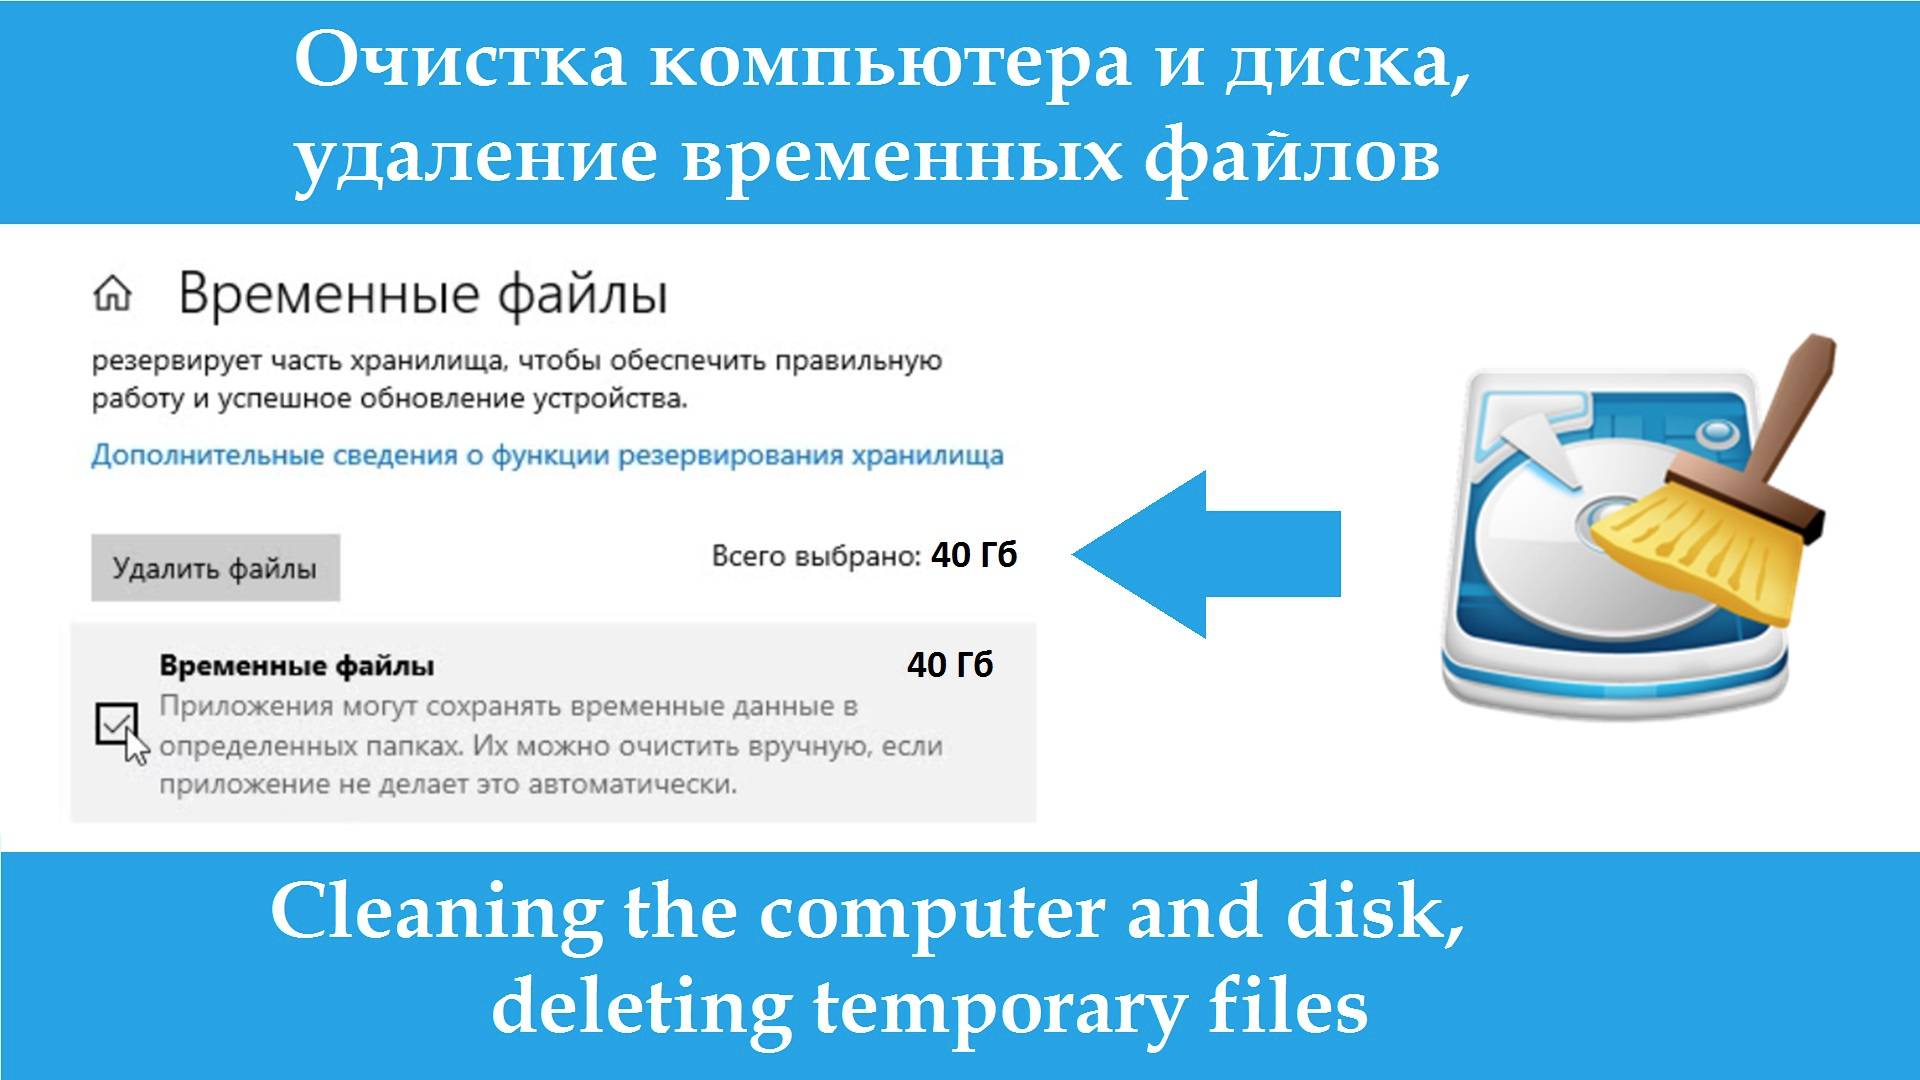 Очистка компьютера и диска, удаление временных файлов